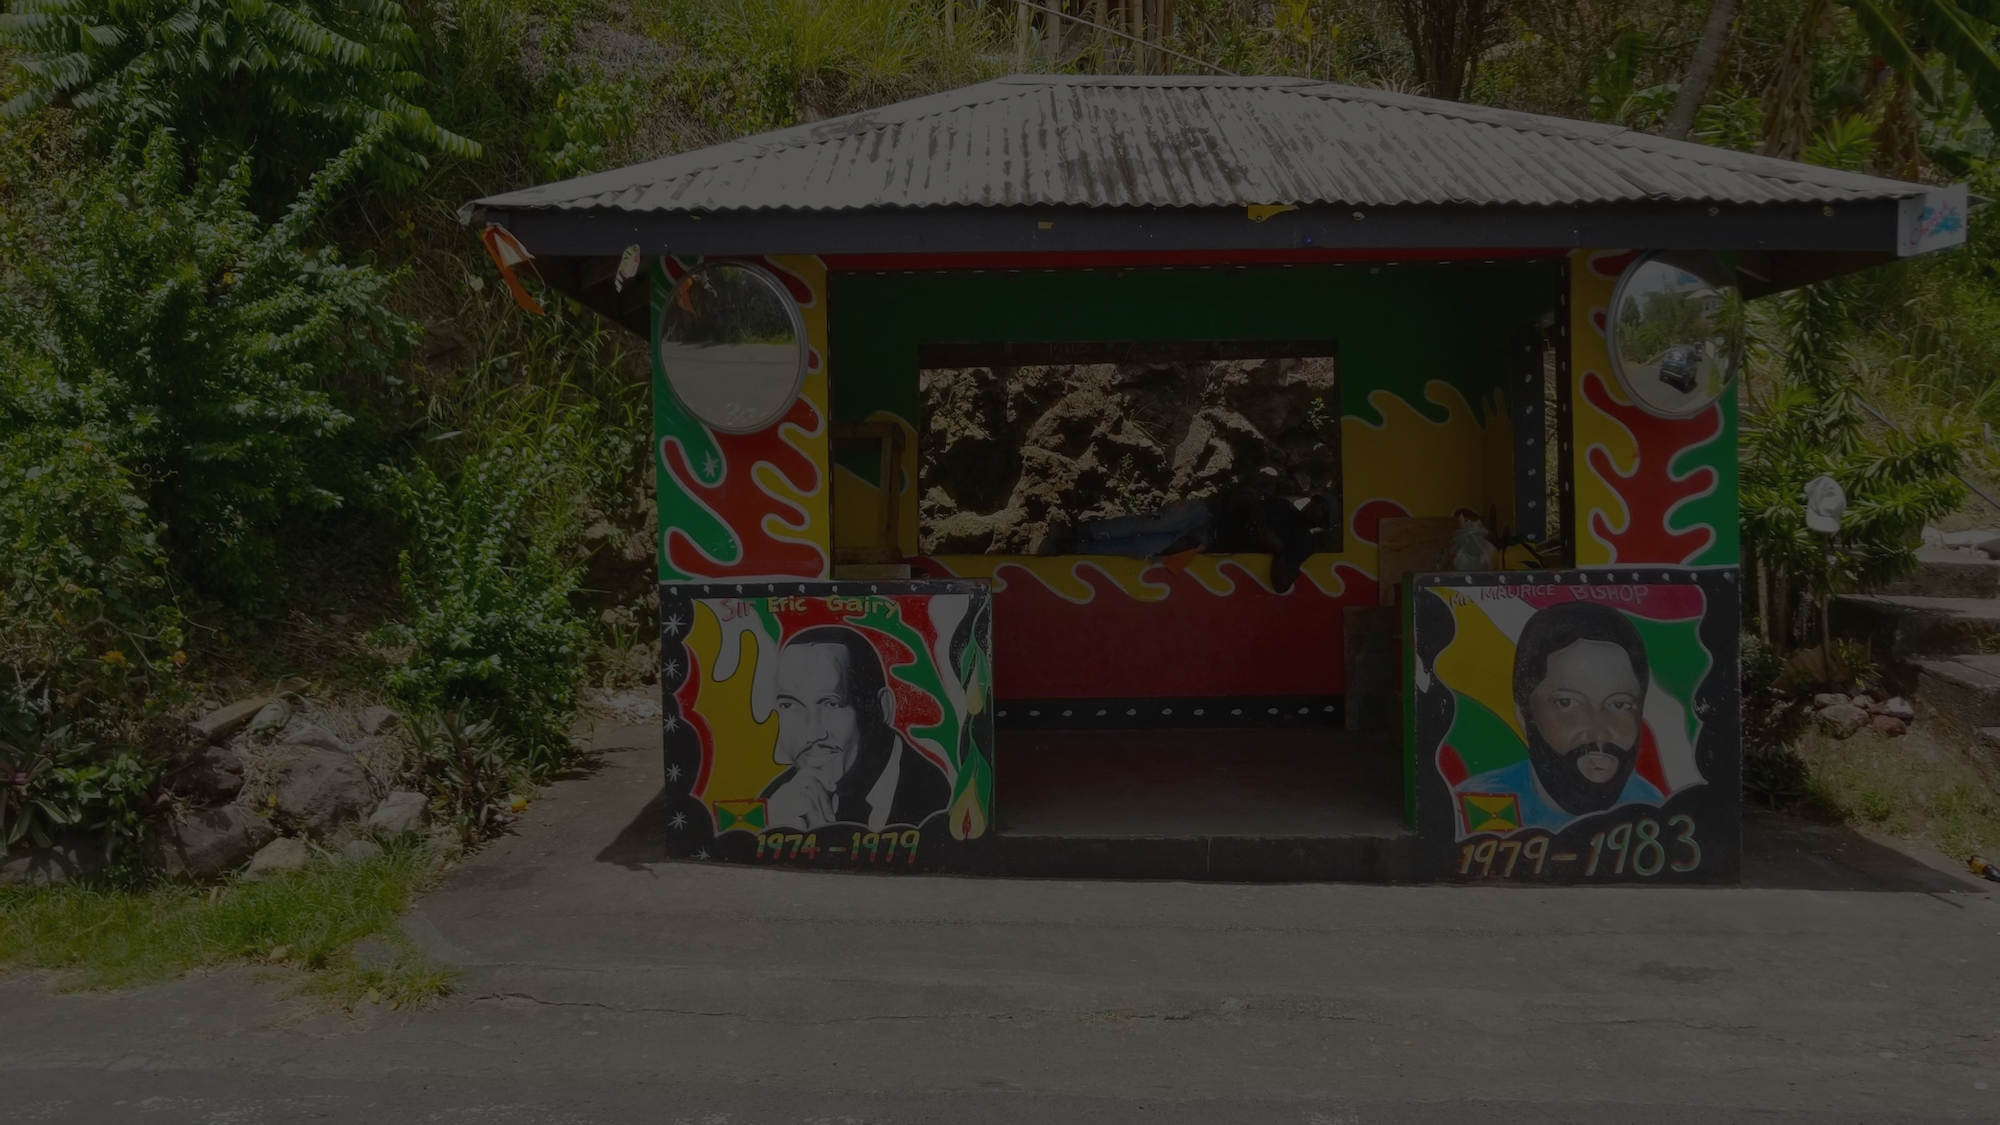 Painted Bus Stop in Grenada